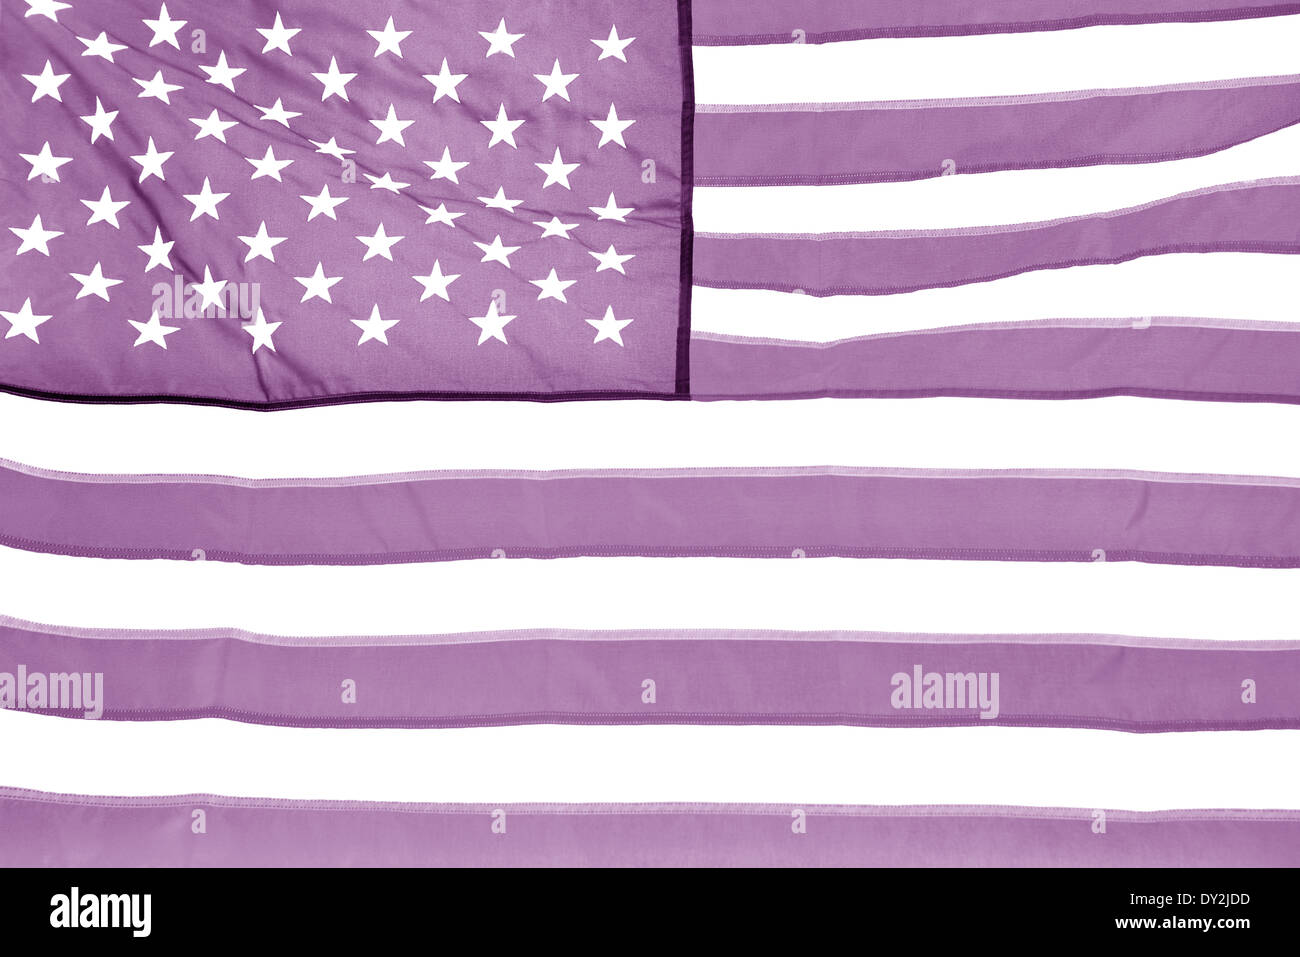 Le drapeau national des États-Unis d'Amérique version lilas. Banque D'Images